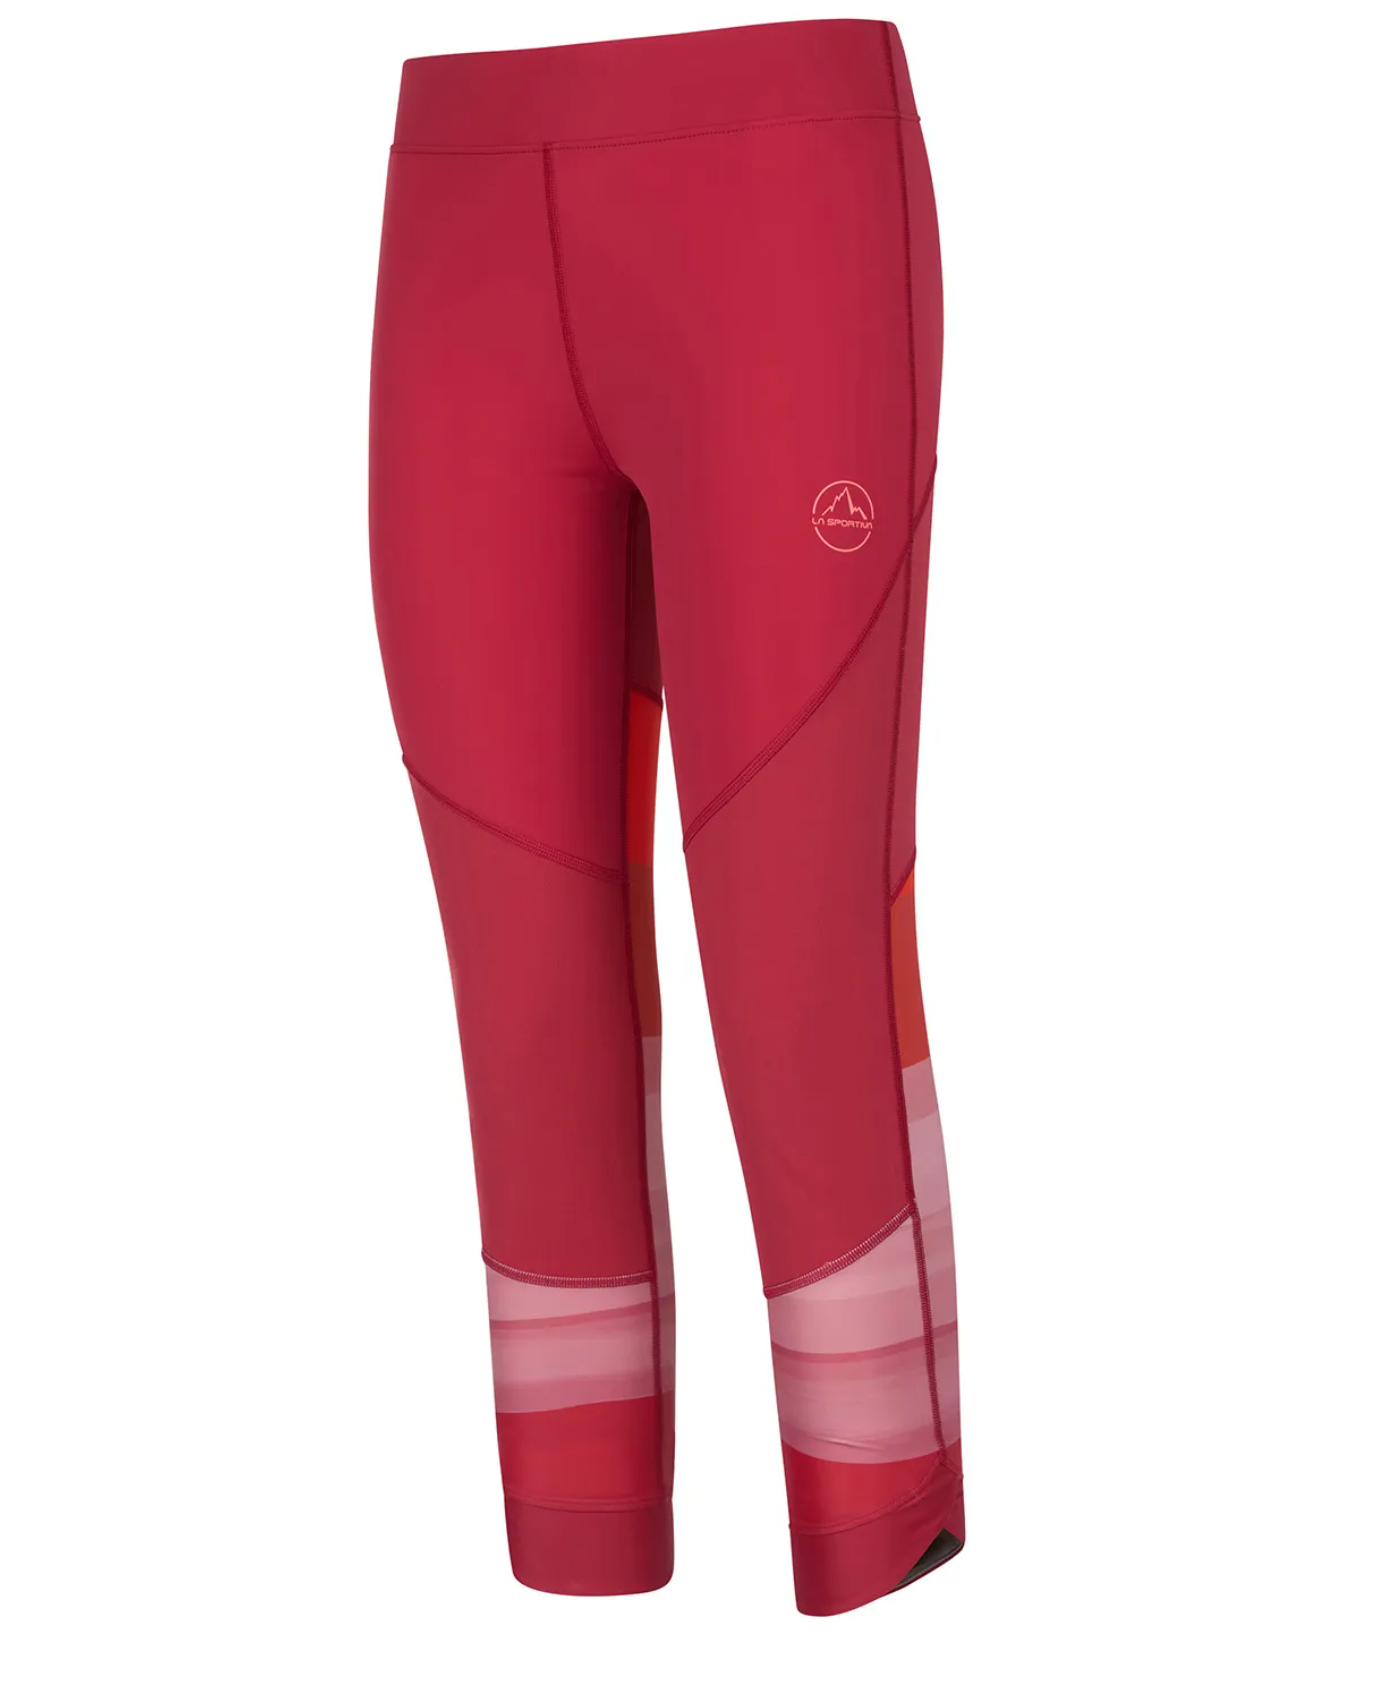 La Sportiva Sensation leggings Womens - Centurion Running Ltd